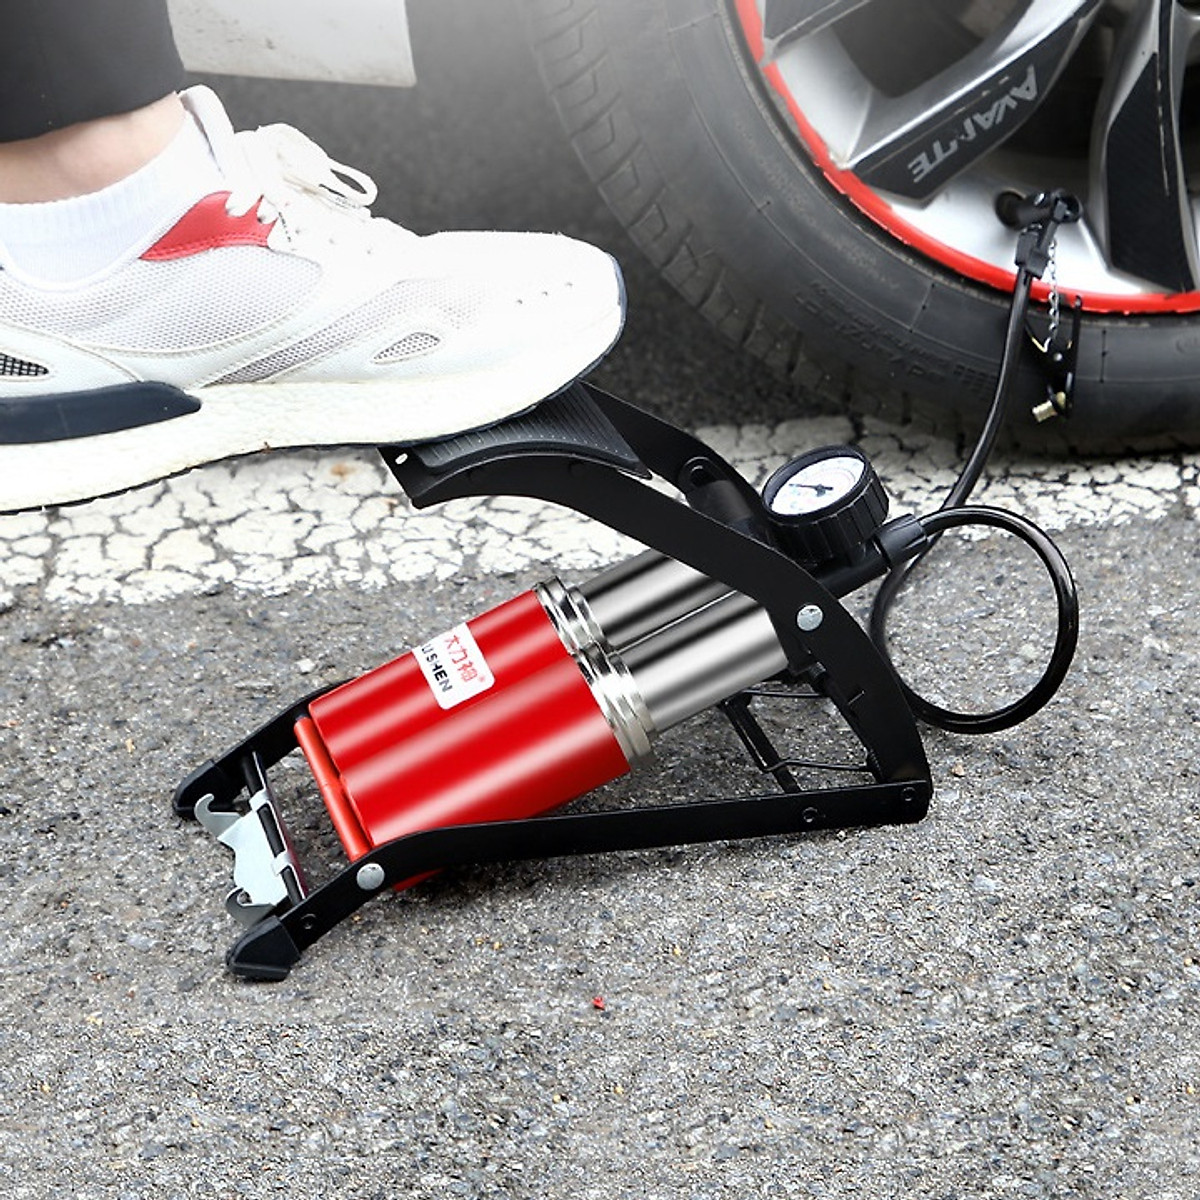 Bơm đạp chân 2 ống cao cấp để bơm xe đạp, xe máy, ô tô, bóng, phao